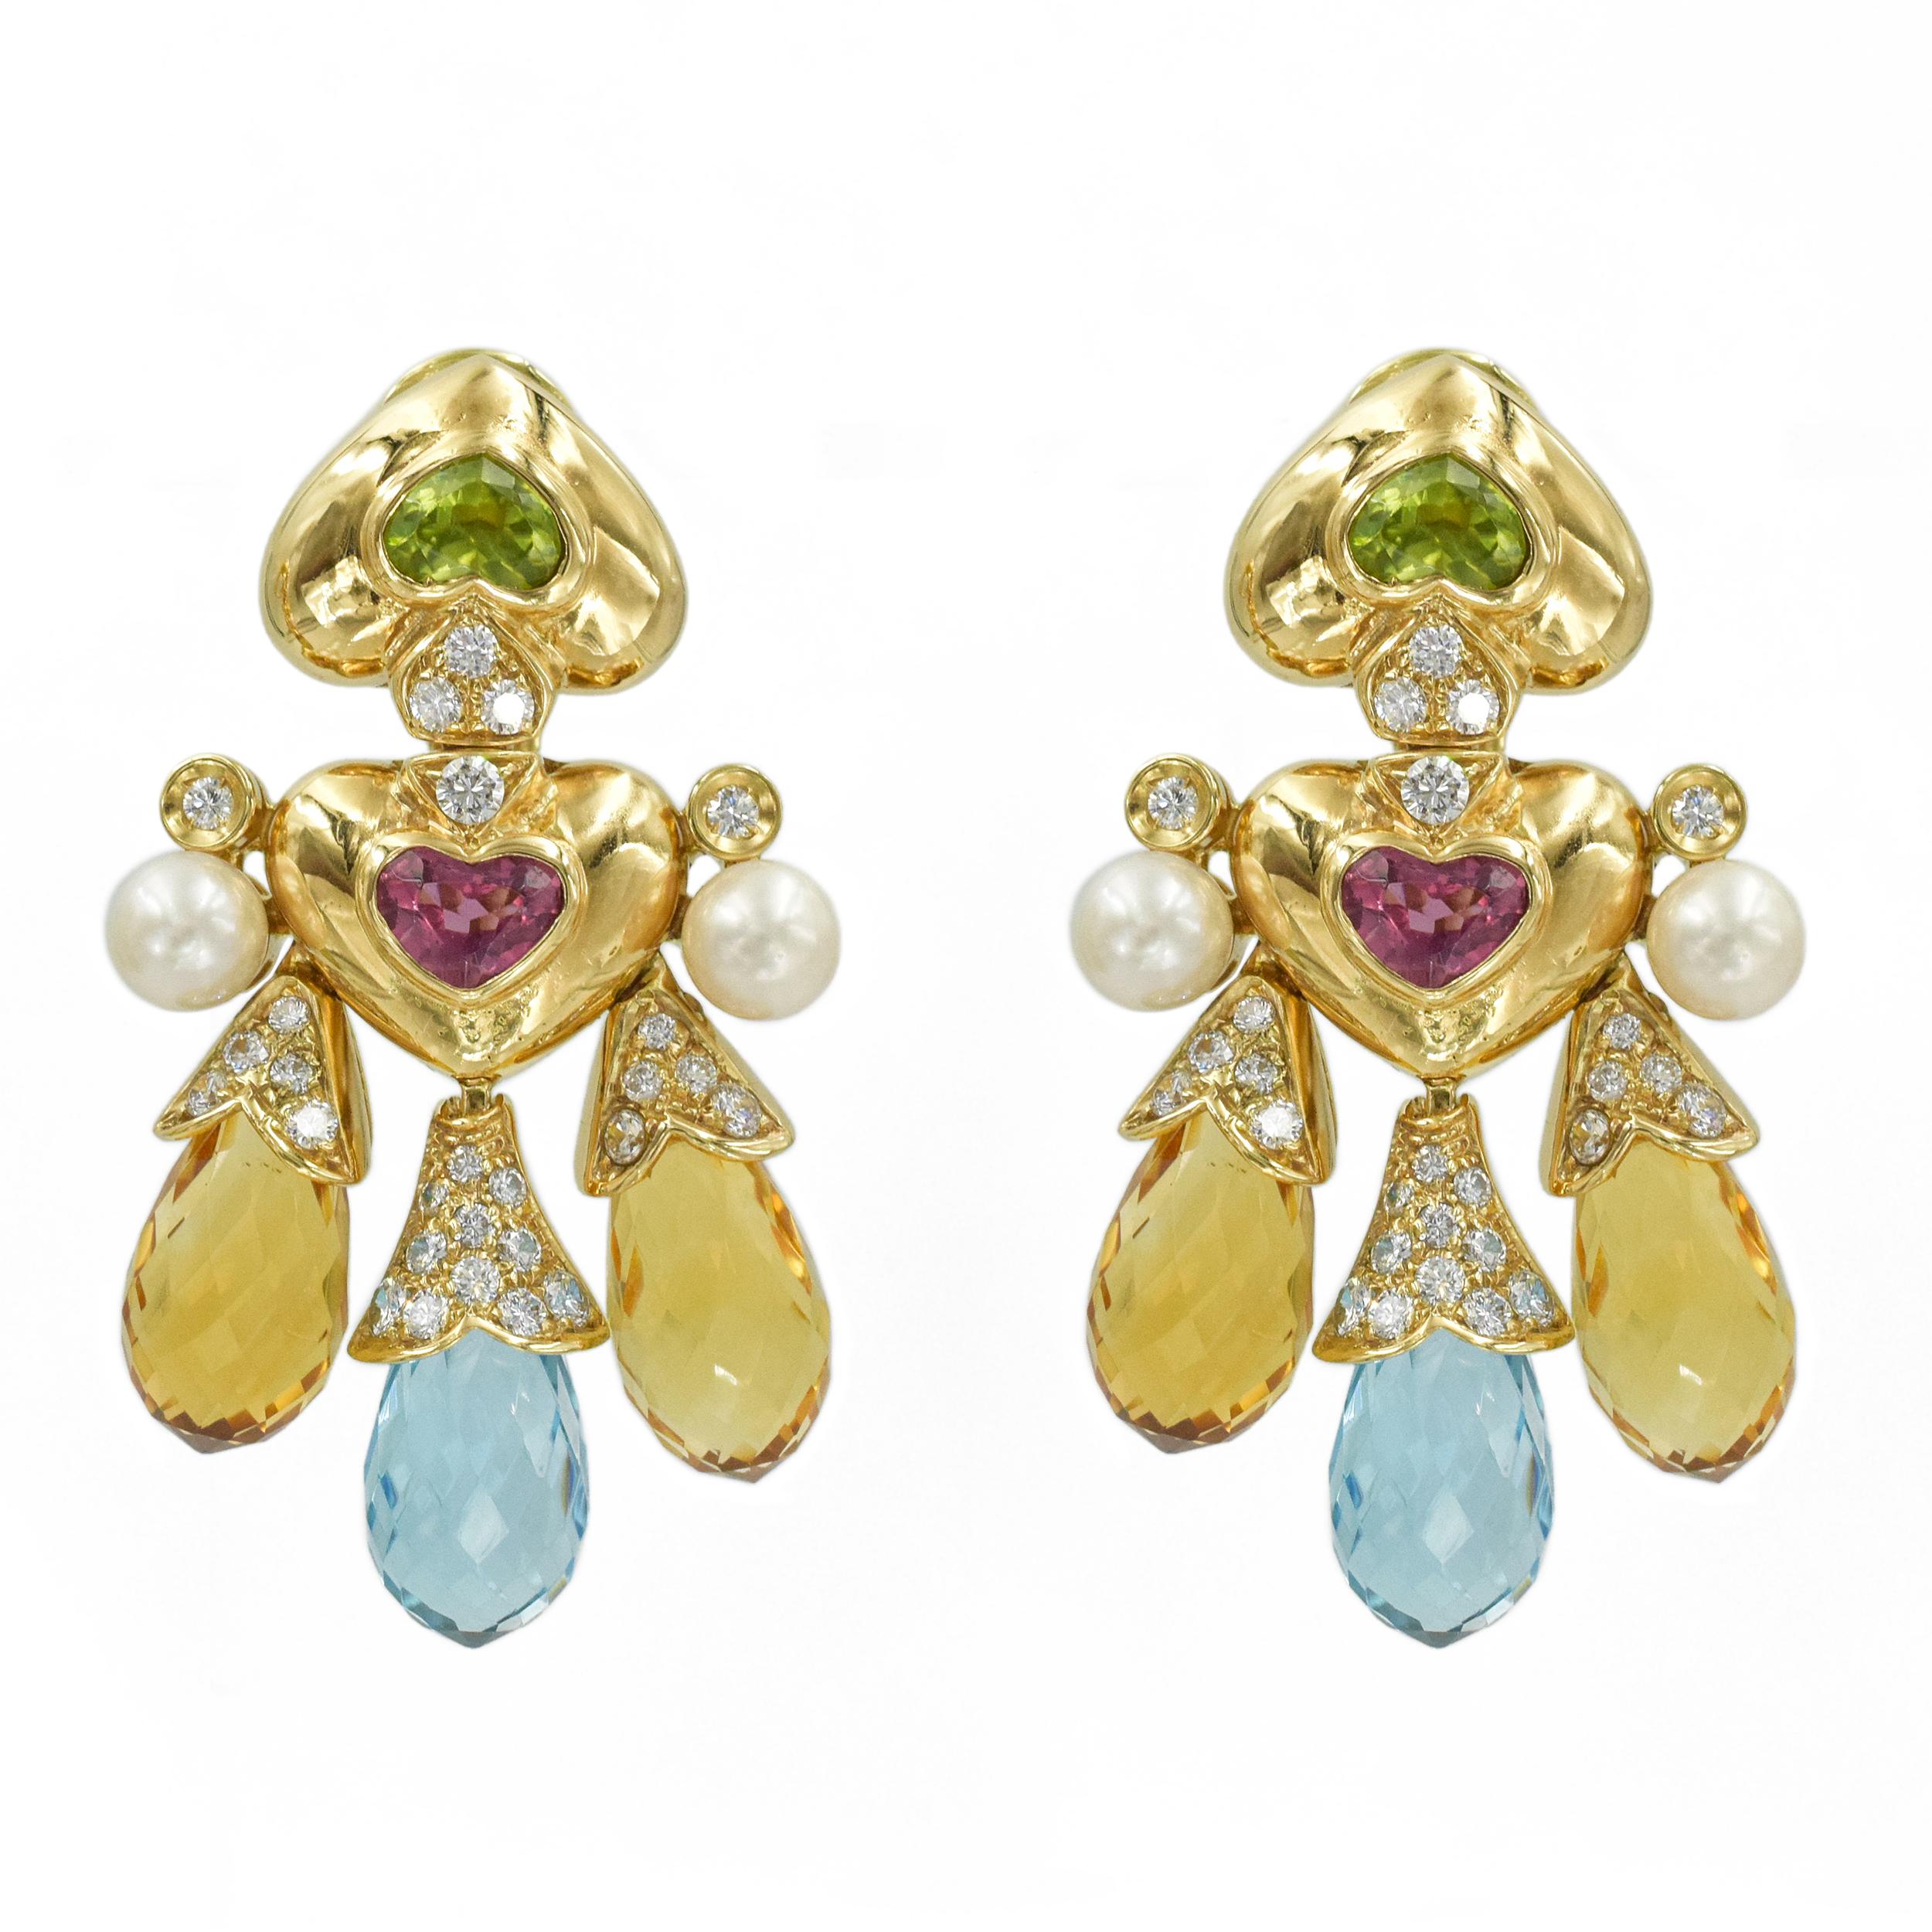 Taille ronde Moussaieff, édition limitée  Collier et boucles d'oreilles en or 18 carats avec perles, diamants et pierres précieuses en vente